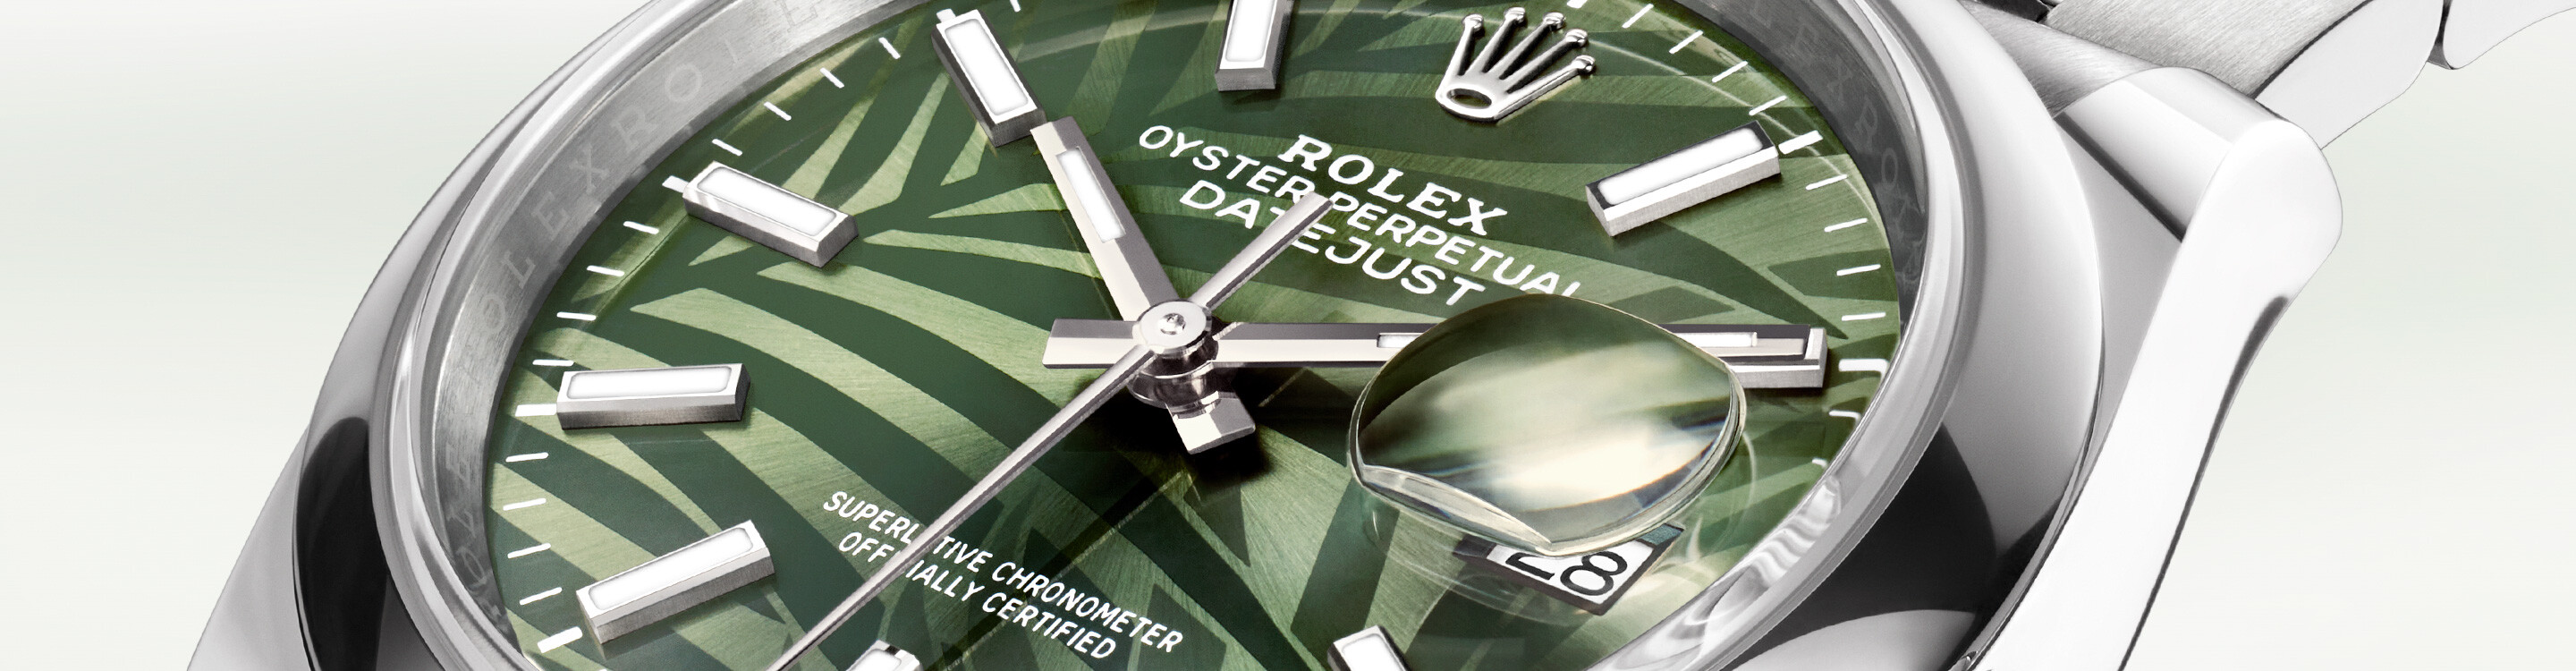 Rolex Watch Datejust 36